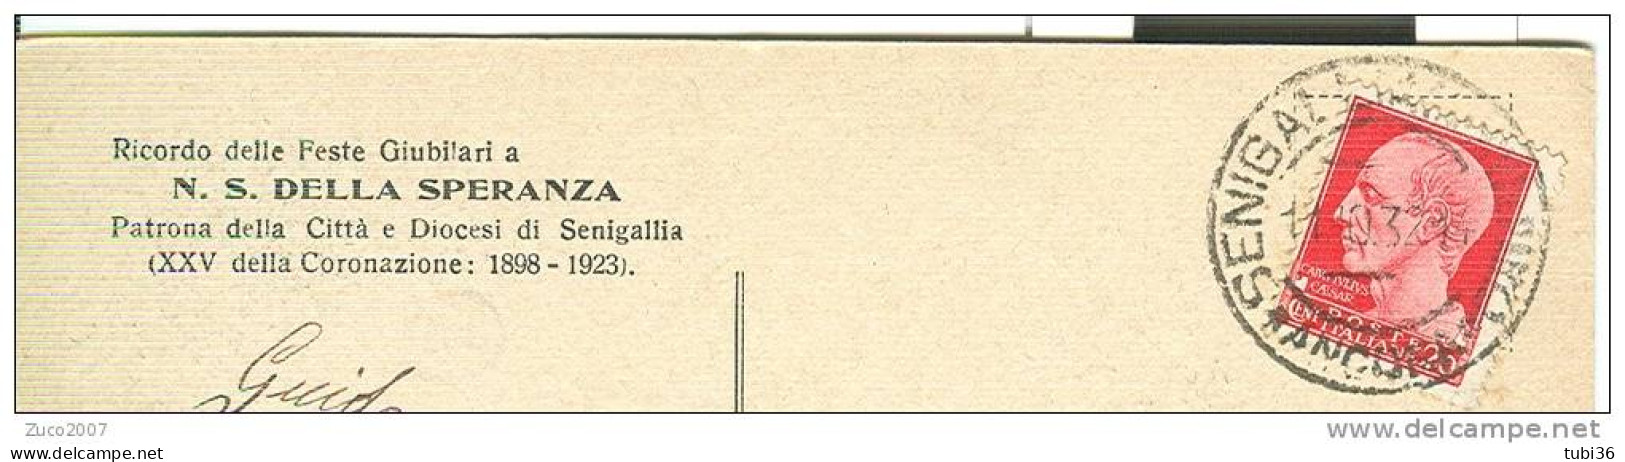 SENIGALLIA  ANTICA, Ricordo Delle Feste Giubilari A N.S. DELLA SPERANZA, PATRONA DI SENIGALLIA, B/N VIAGGIATA  1932, - Senigallia